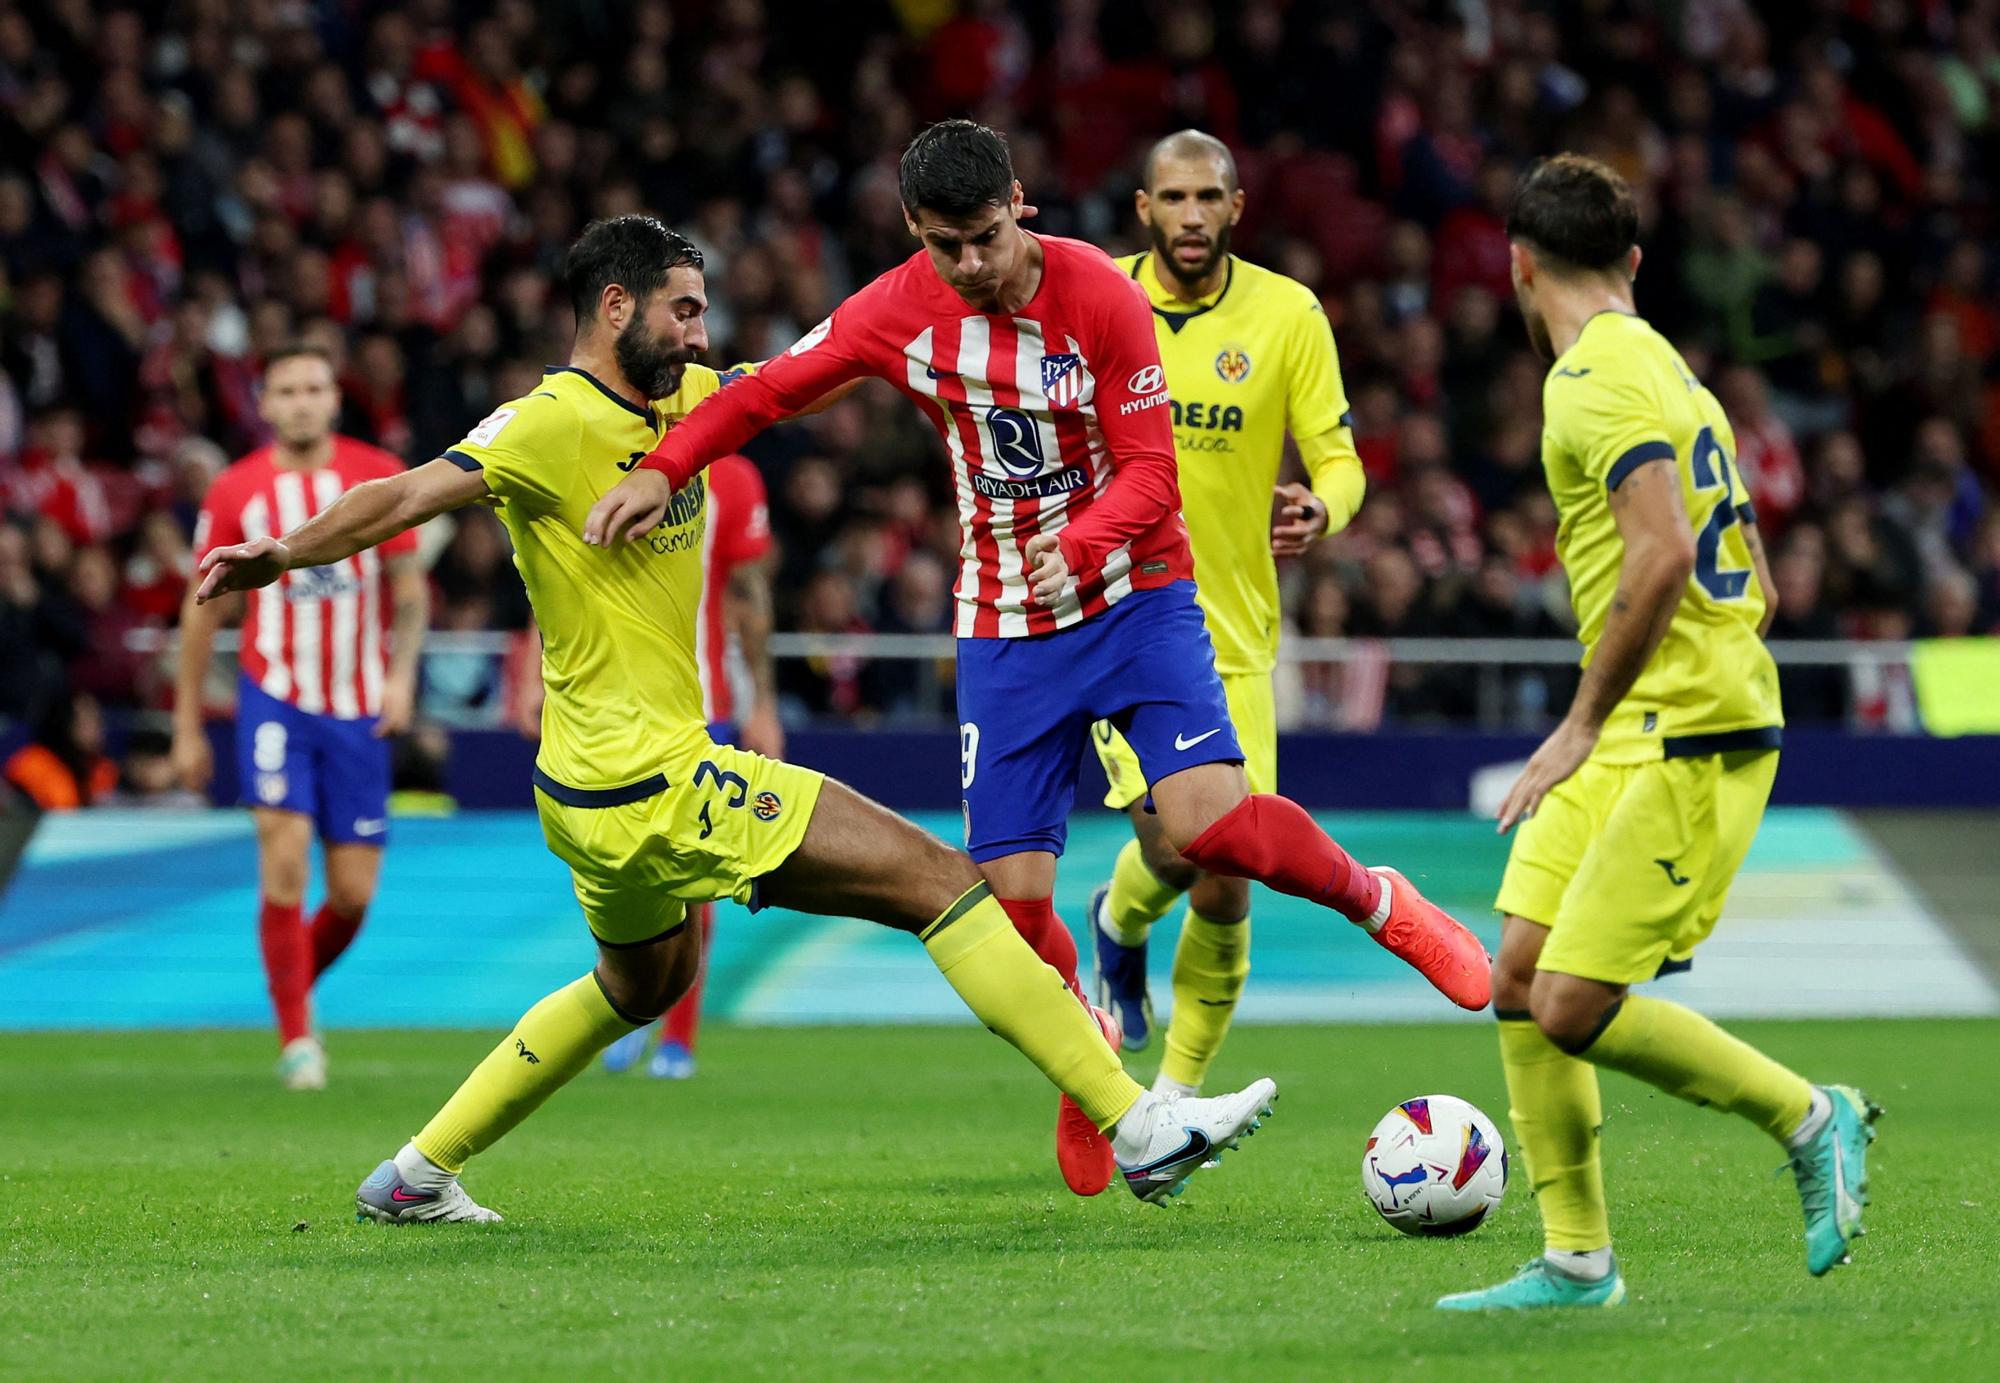 LaLiga - Atletico Madrid v Villarreal